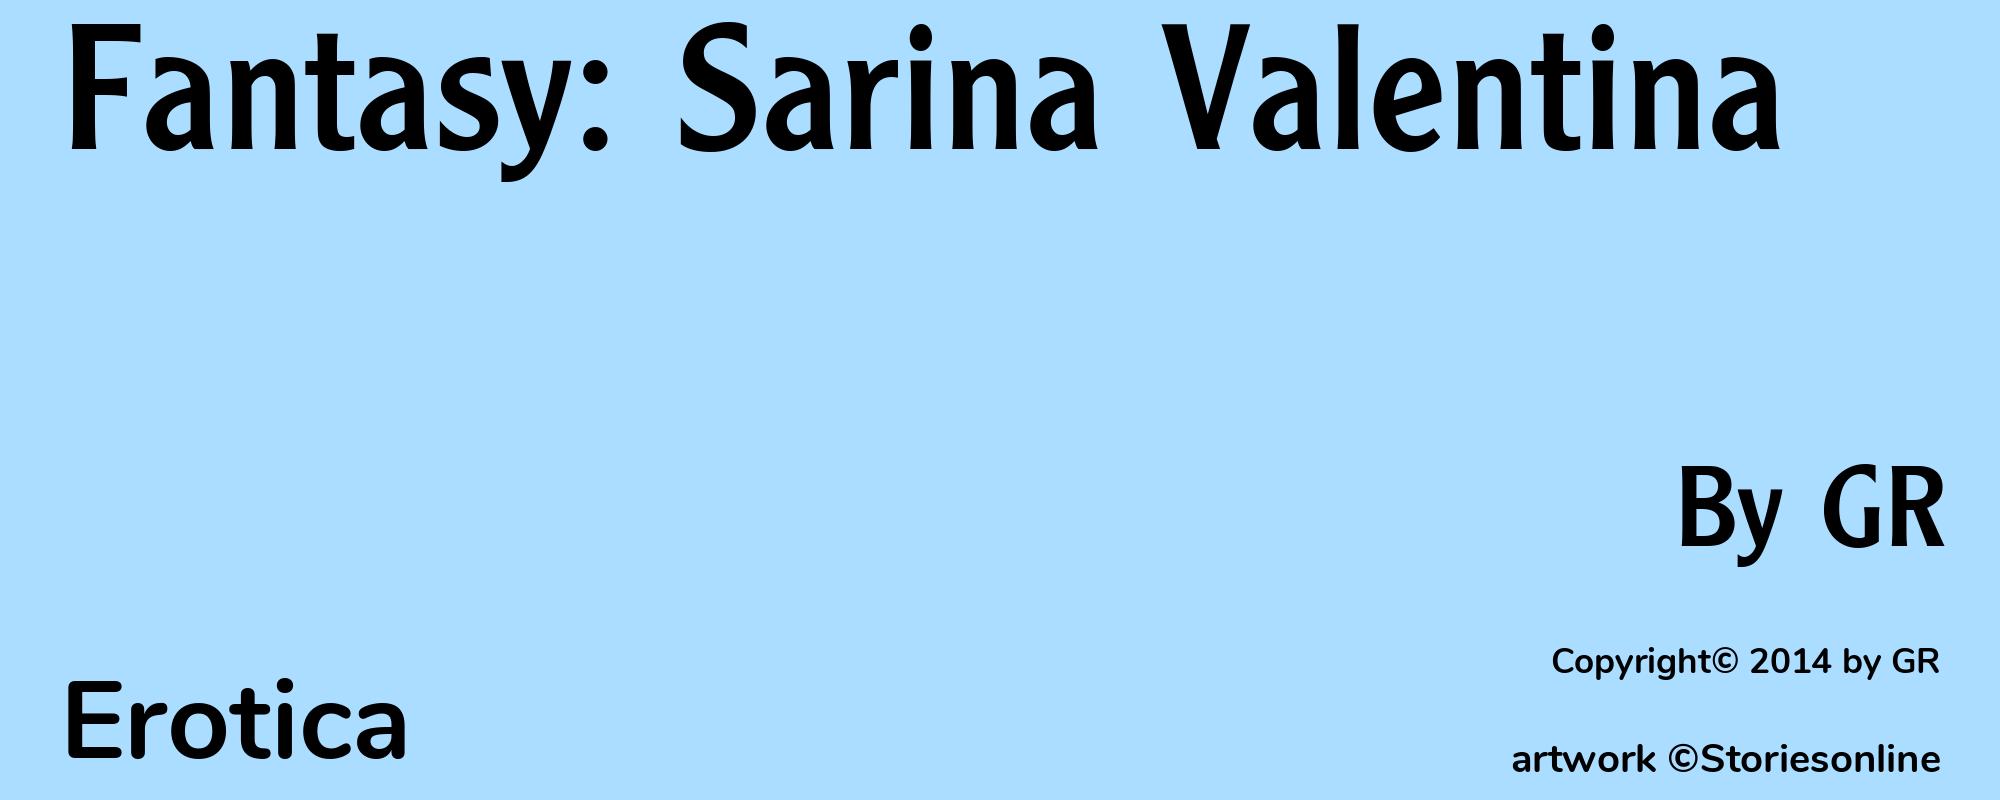 Fantasy: Sarina Valentina - Cover